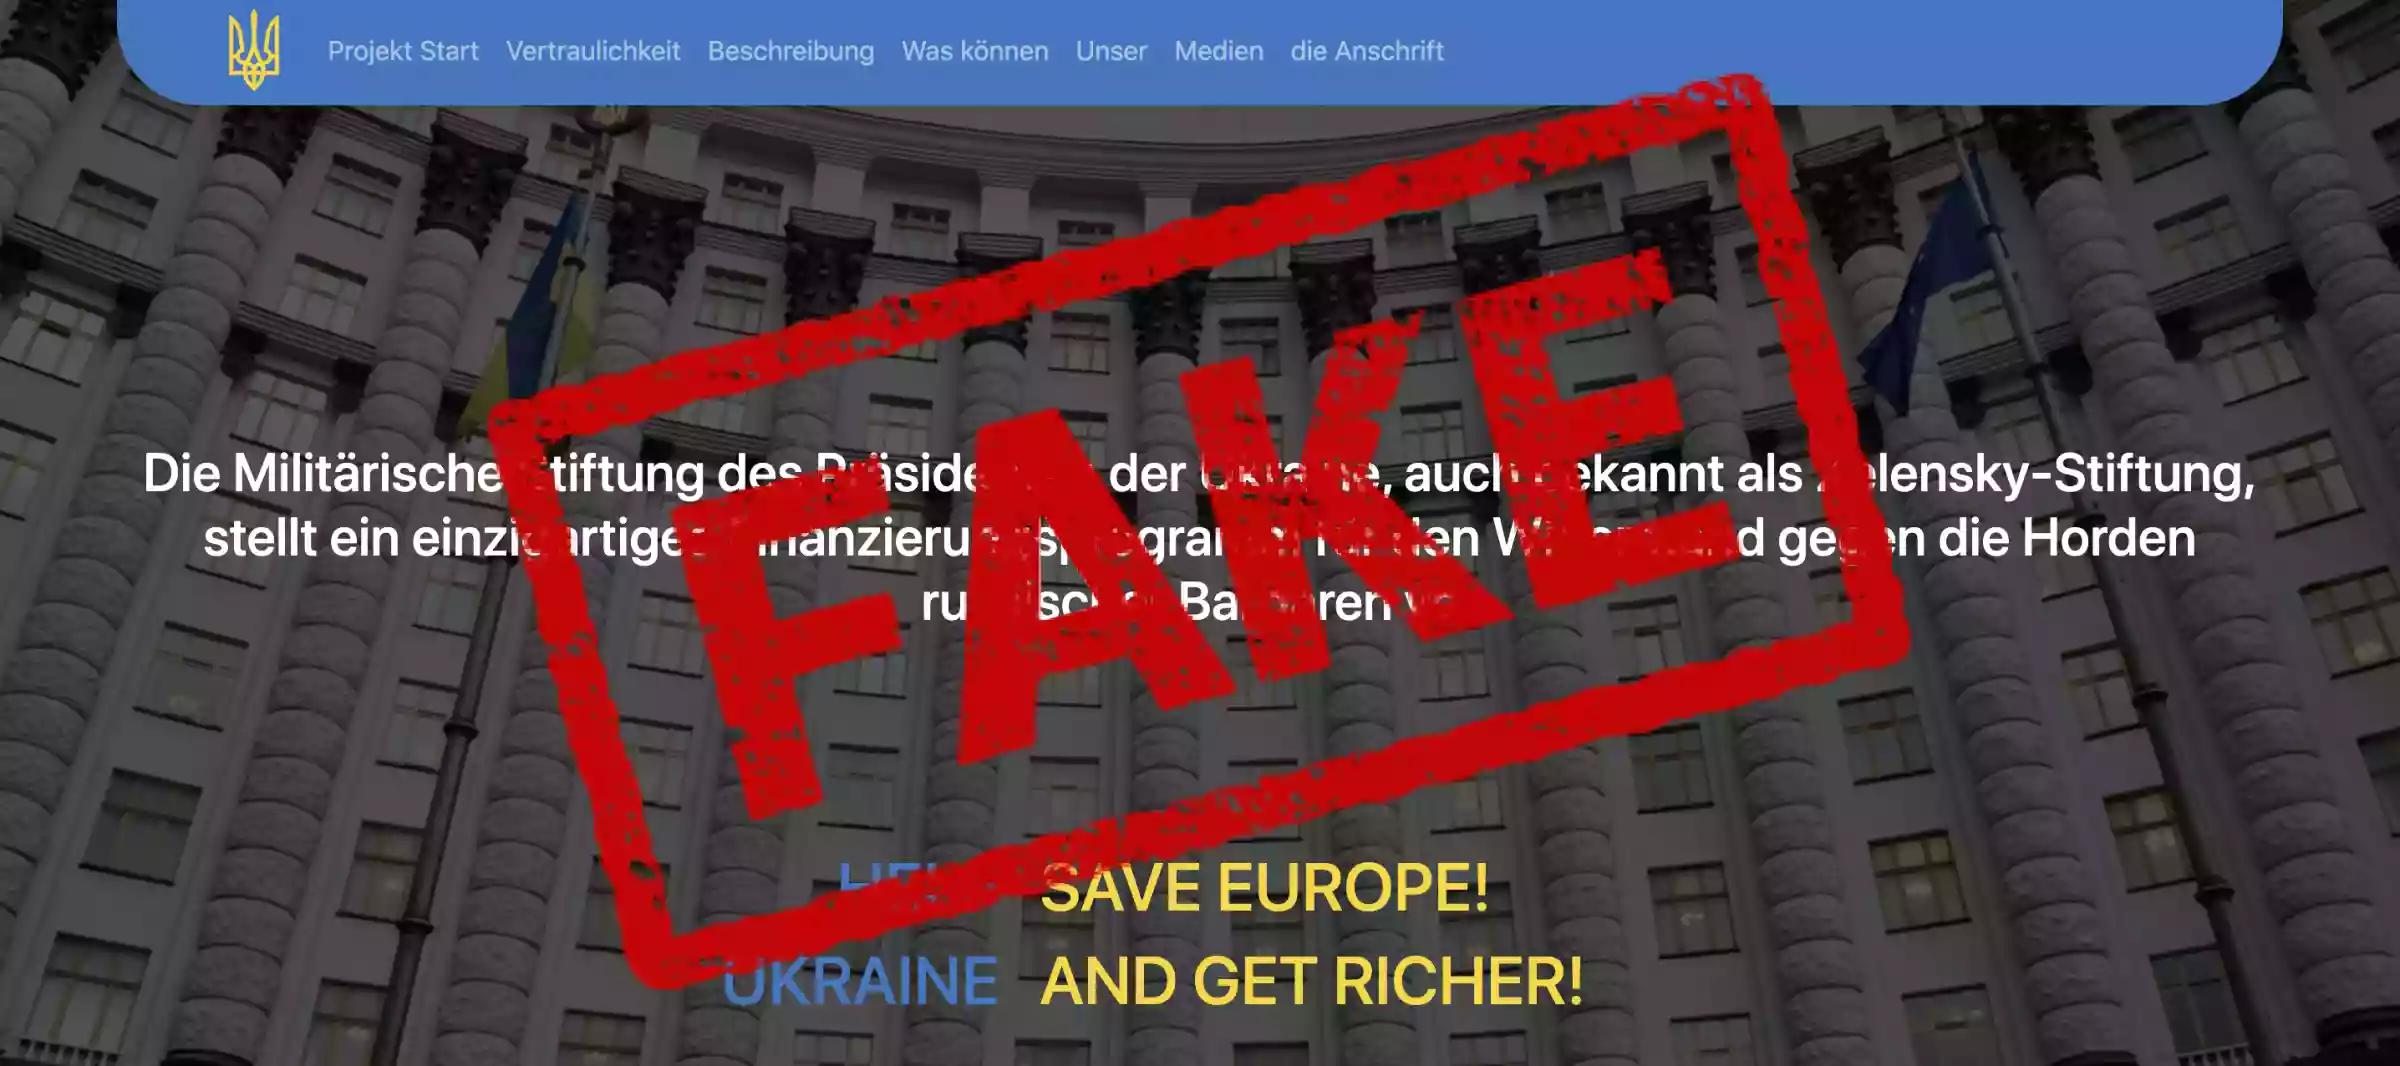 Російські спецслужби створили фейковий сайт для дискредитації Зеленського у Західній Європі – ГУР